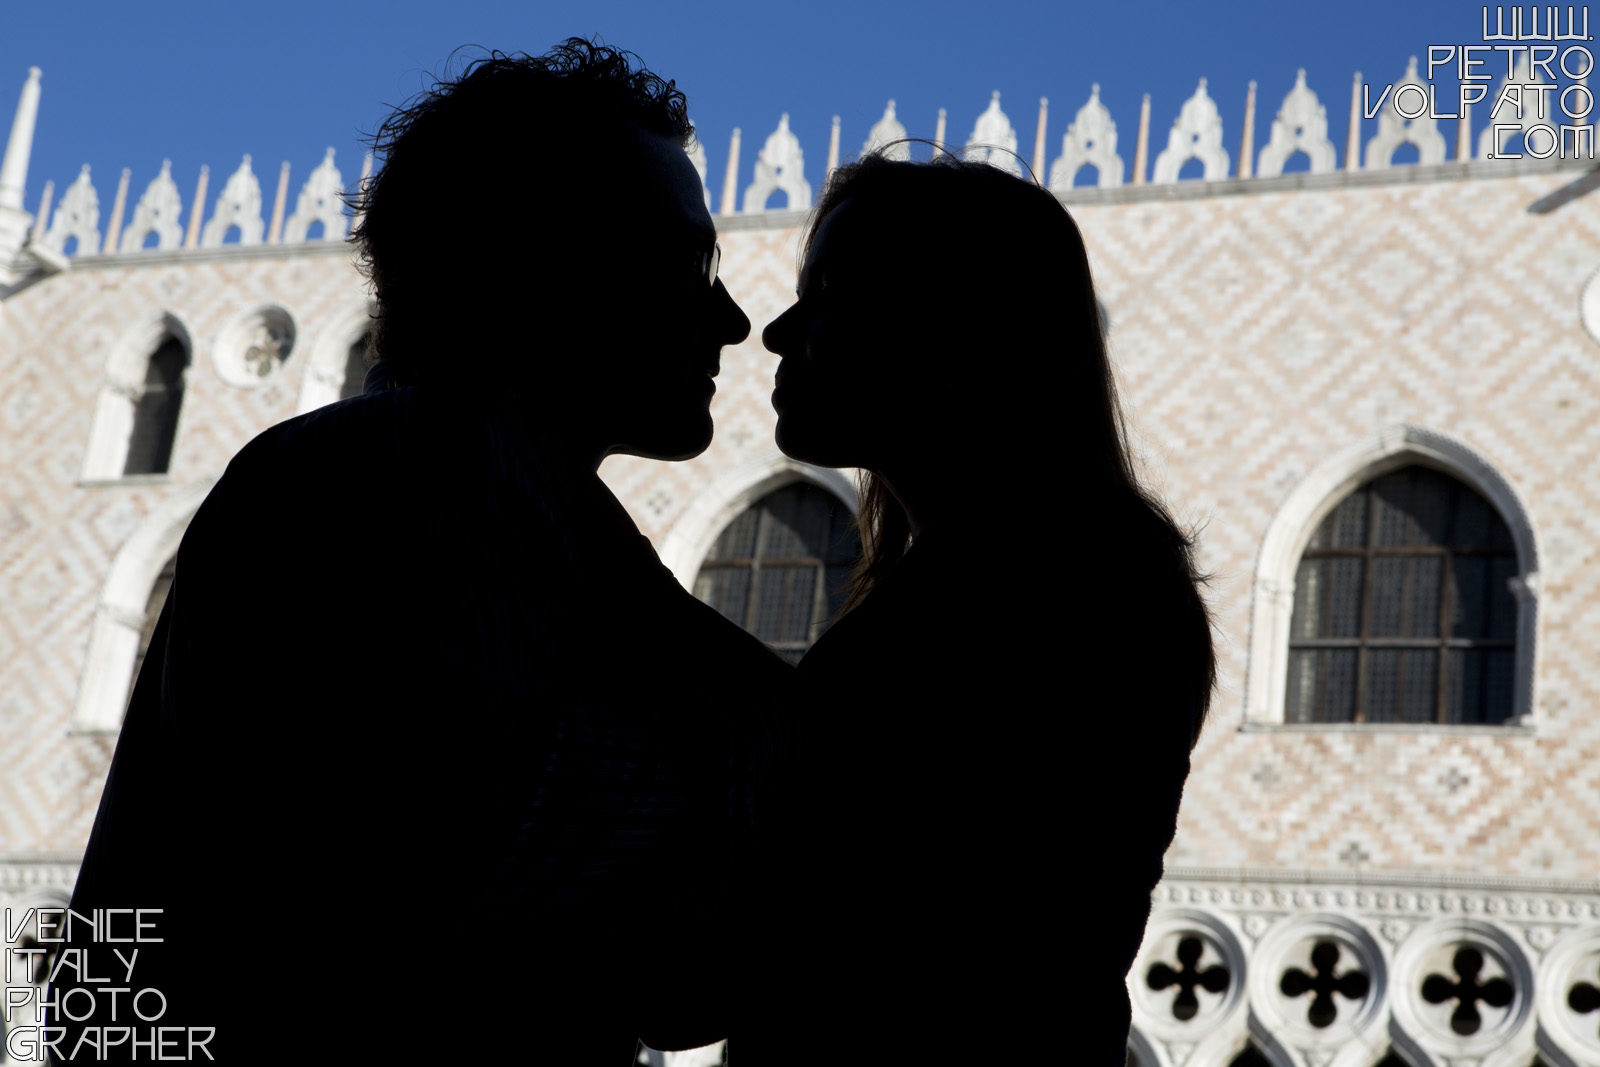 Fotografo a Venezia per servizio fotografico fidanzamento coppia innamorati ~ Foto romantiche e divertenti passeggiata e giro in gondola